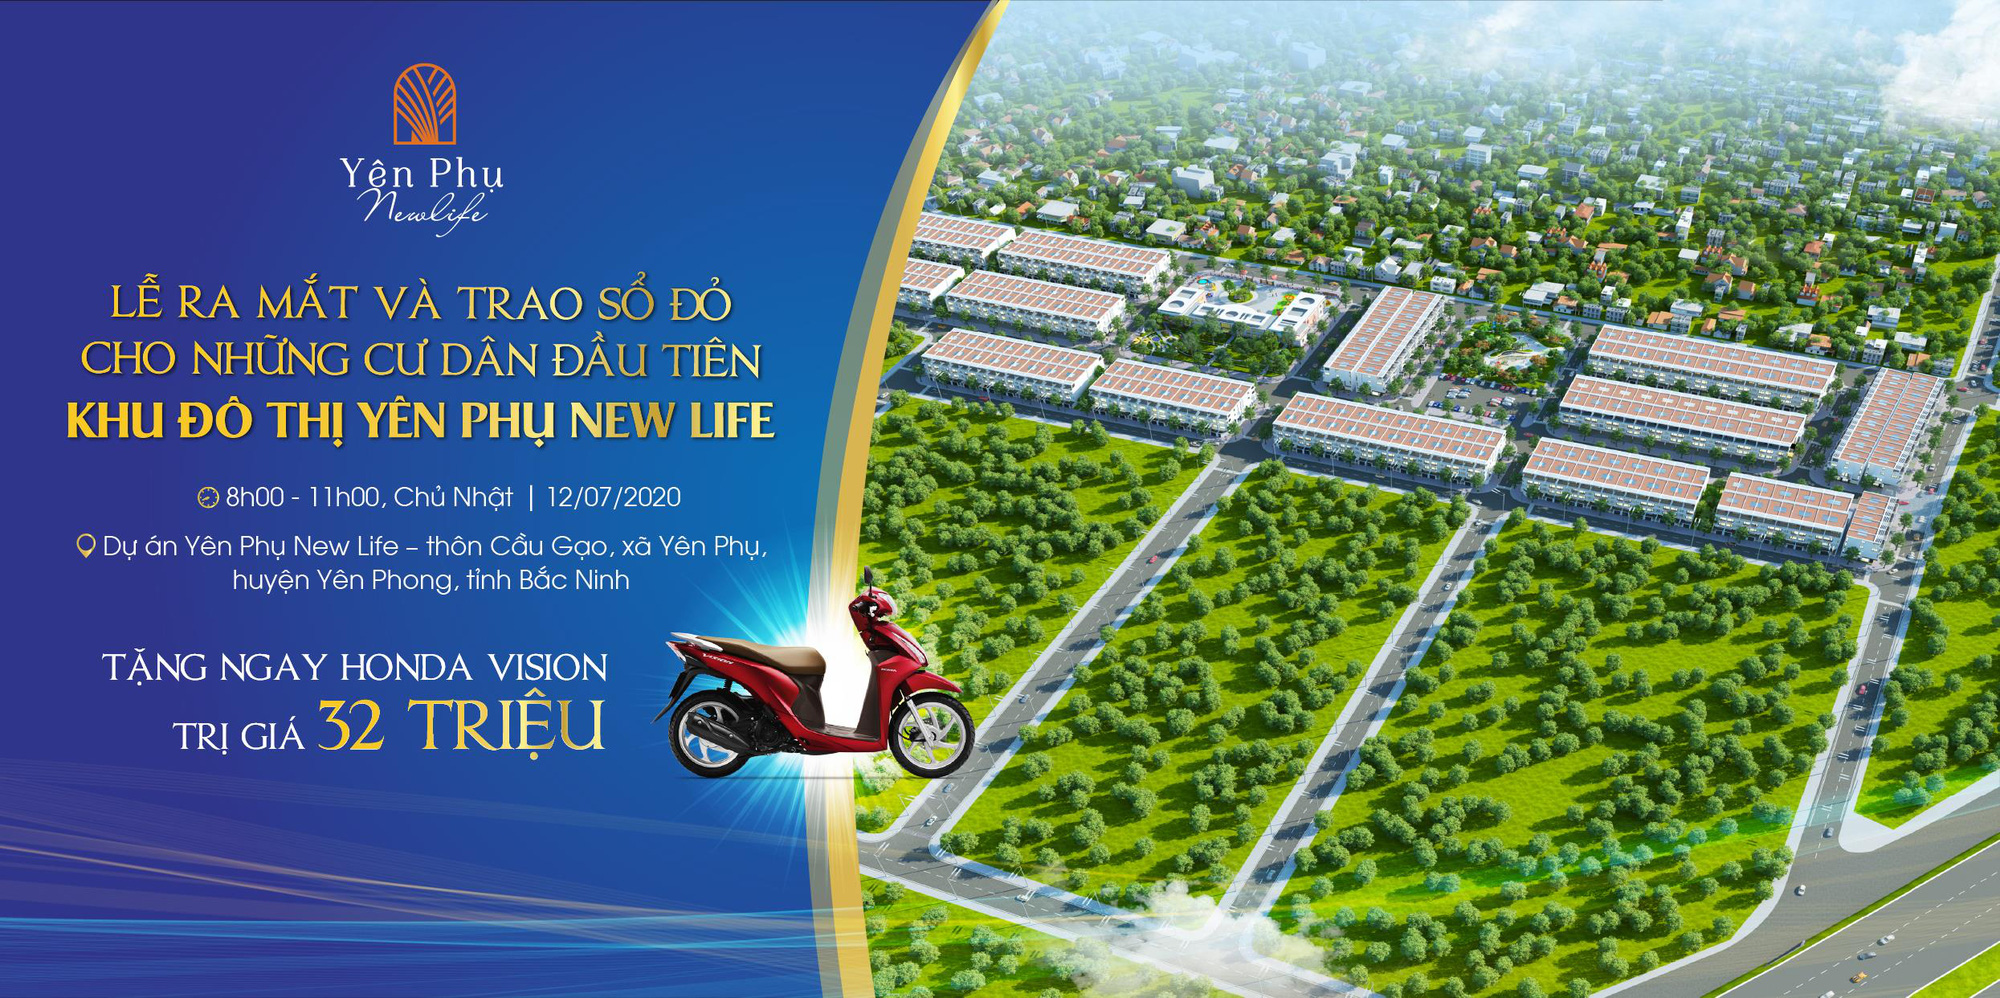 Ra mắt dự án đất nền Yên Phụ New Life – khu đất nền mới nổi tại Bắc Ninh vào ngày 12/7 - Ảnh 1.